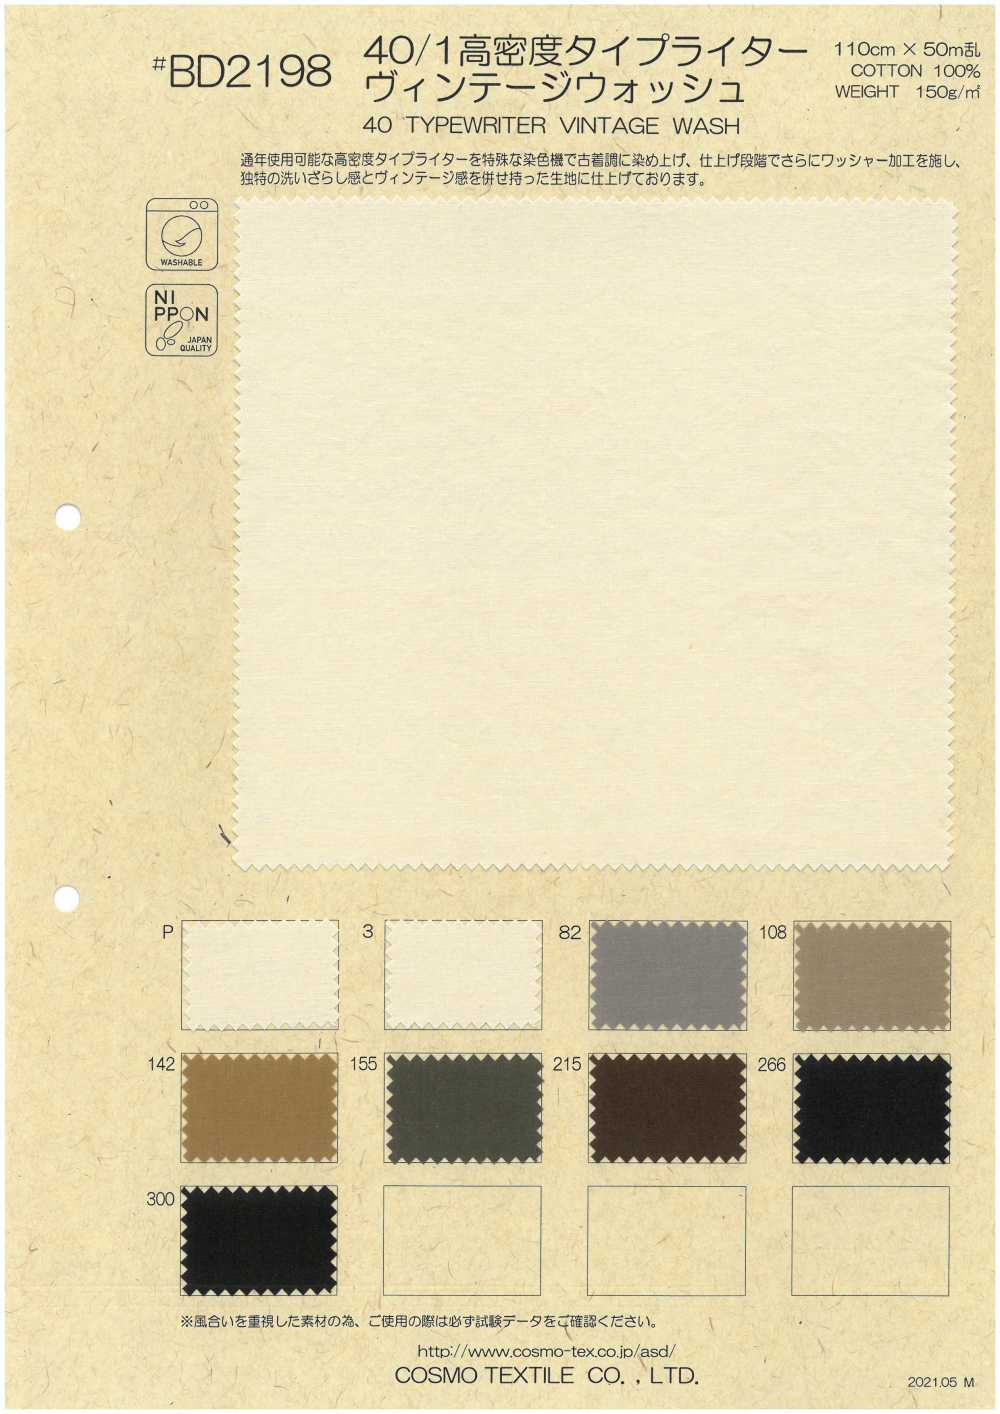 BD2198 [OUTLET] 40/1 高密度高密度平織Vintage Wash[面料] Cosmo Textile 日本